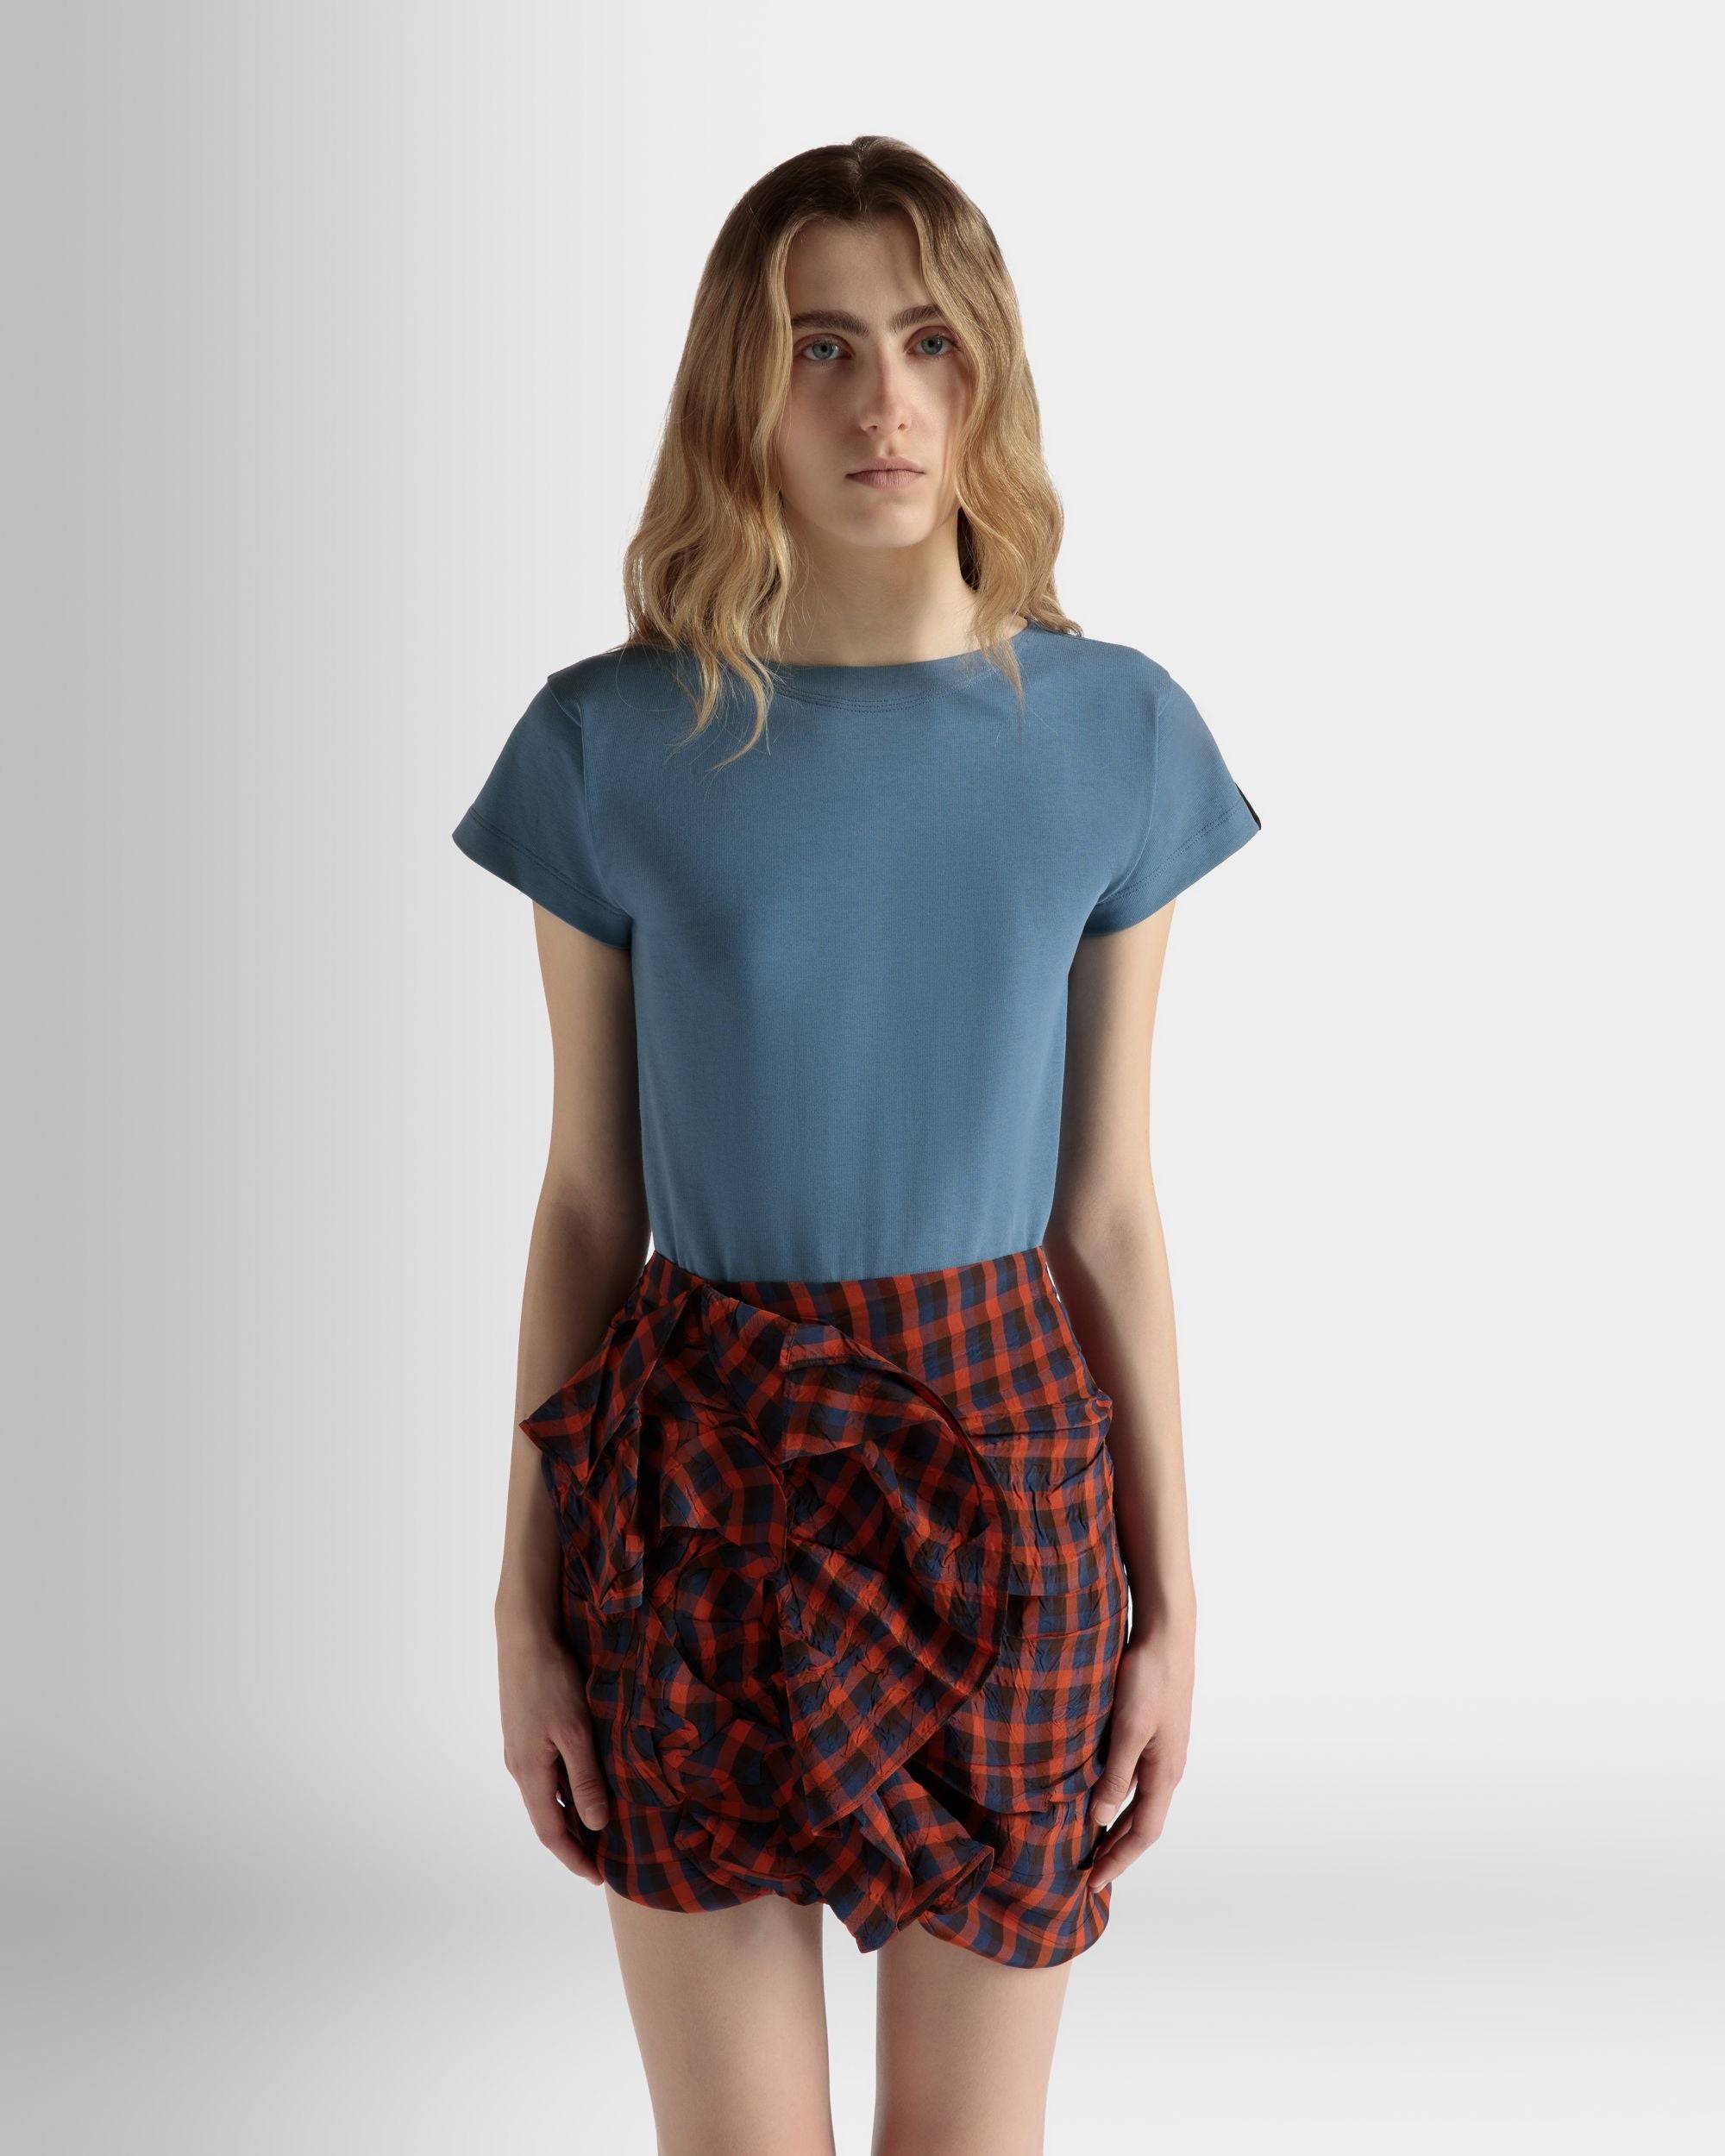 T-Shirt in Light Blue Cotton - Women's - Bally - 03